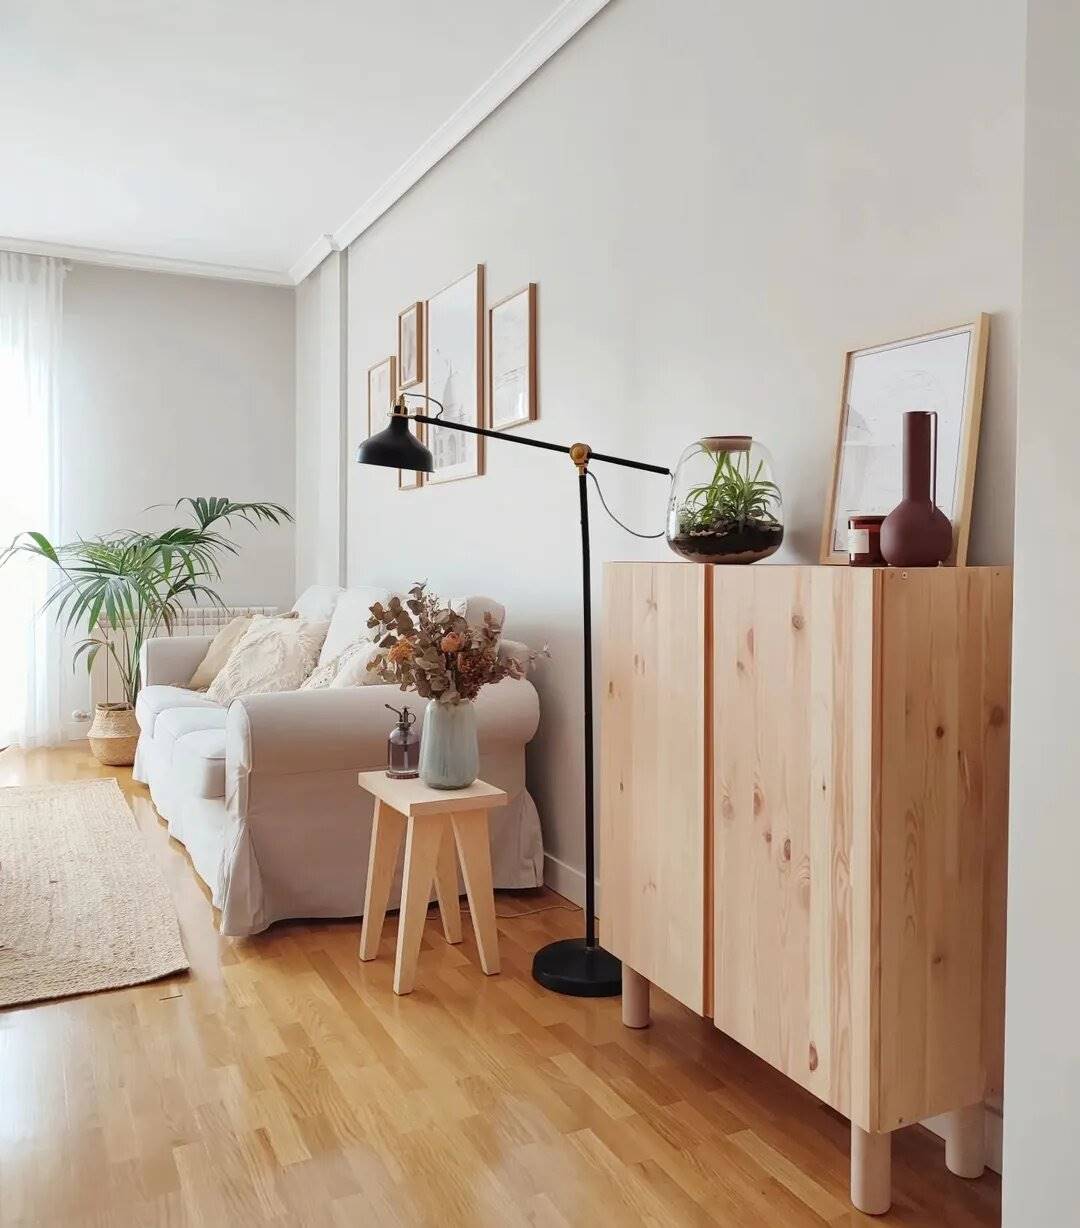 Salón de estilo natural con armario IVAR, lámpara de pie RANARP y sofá EKTORP de IKEA.